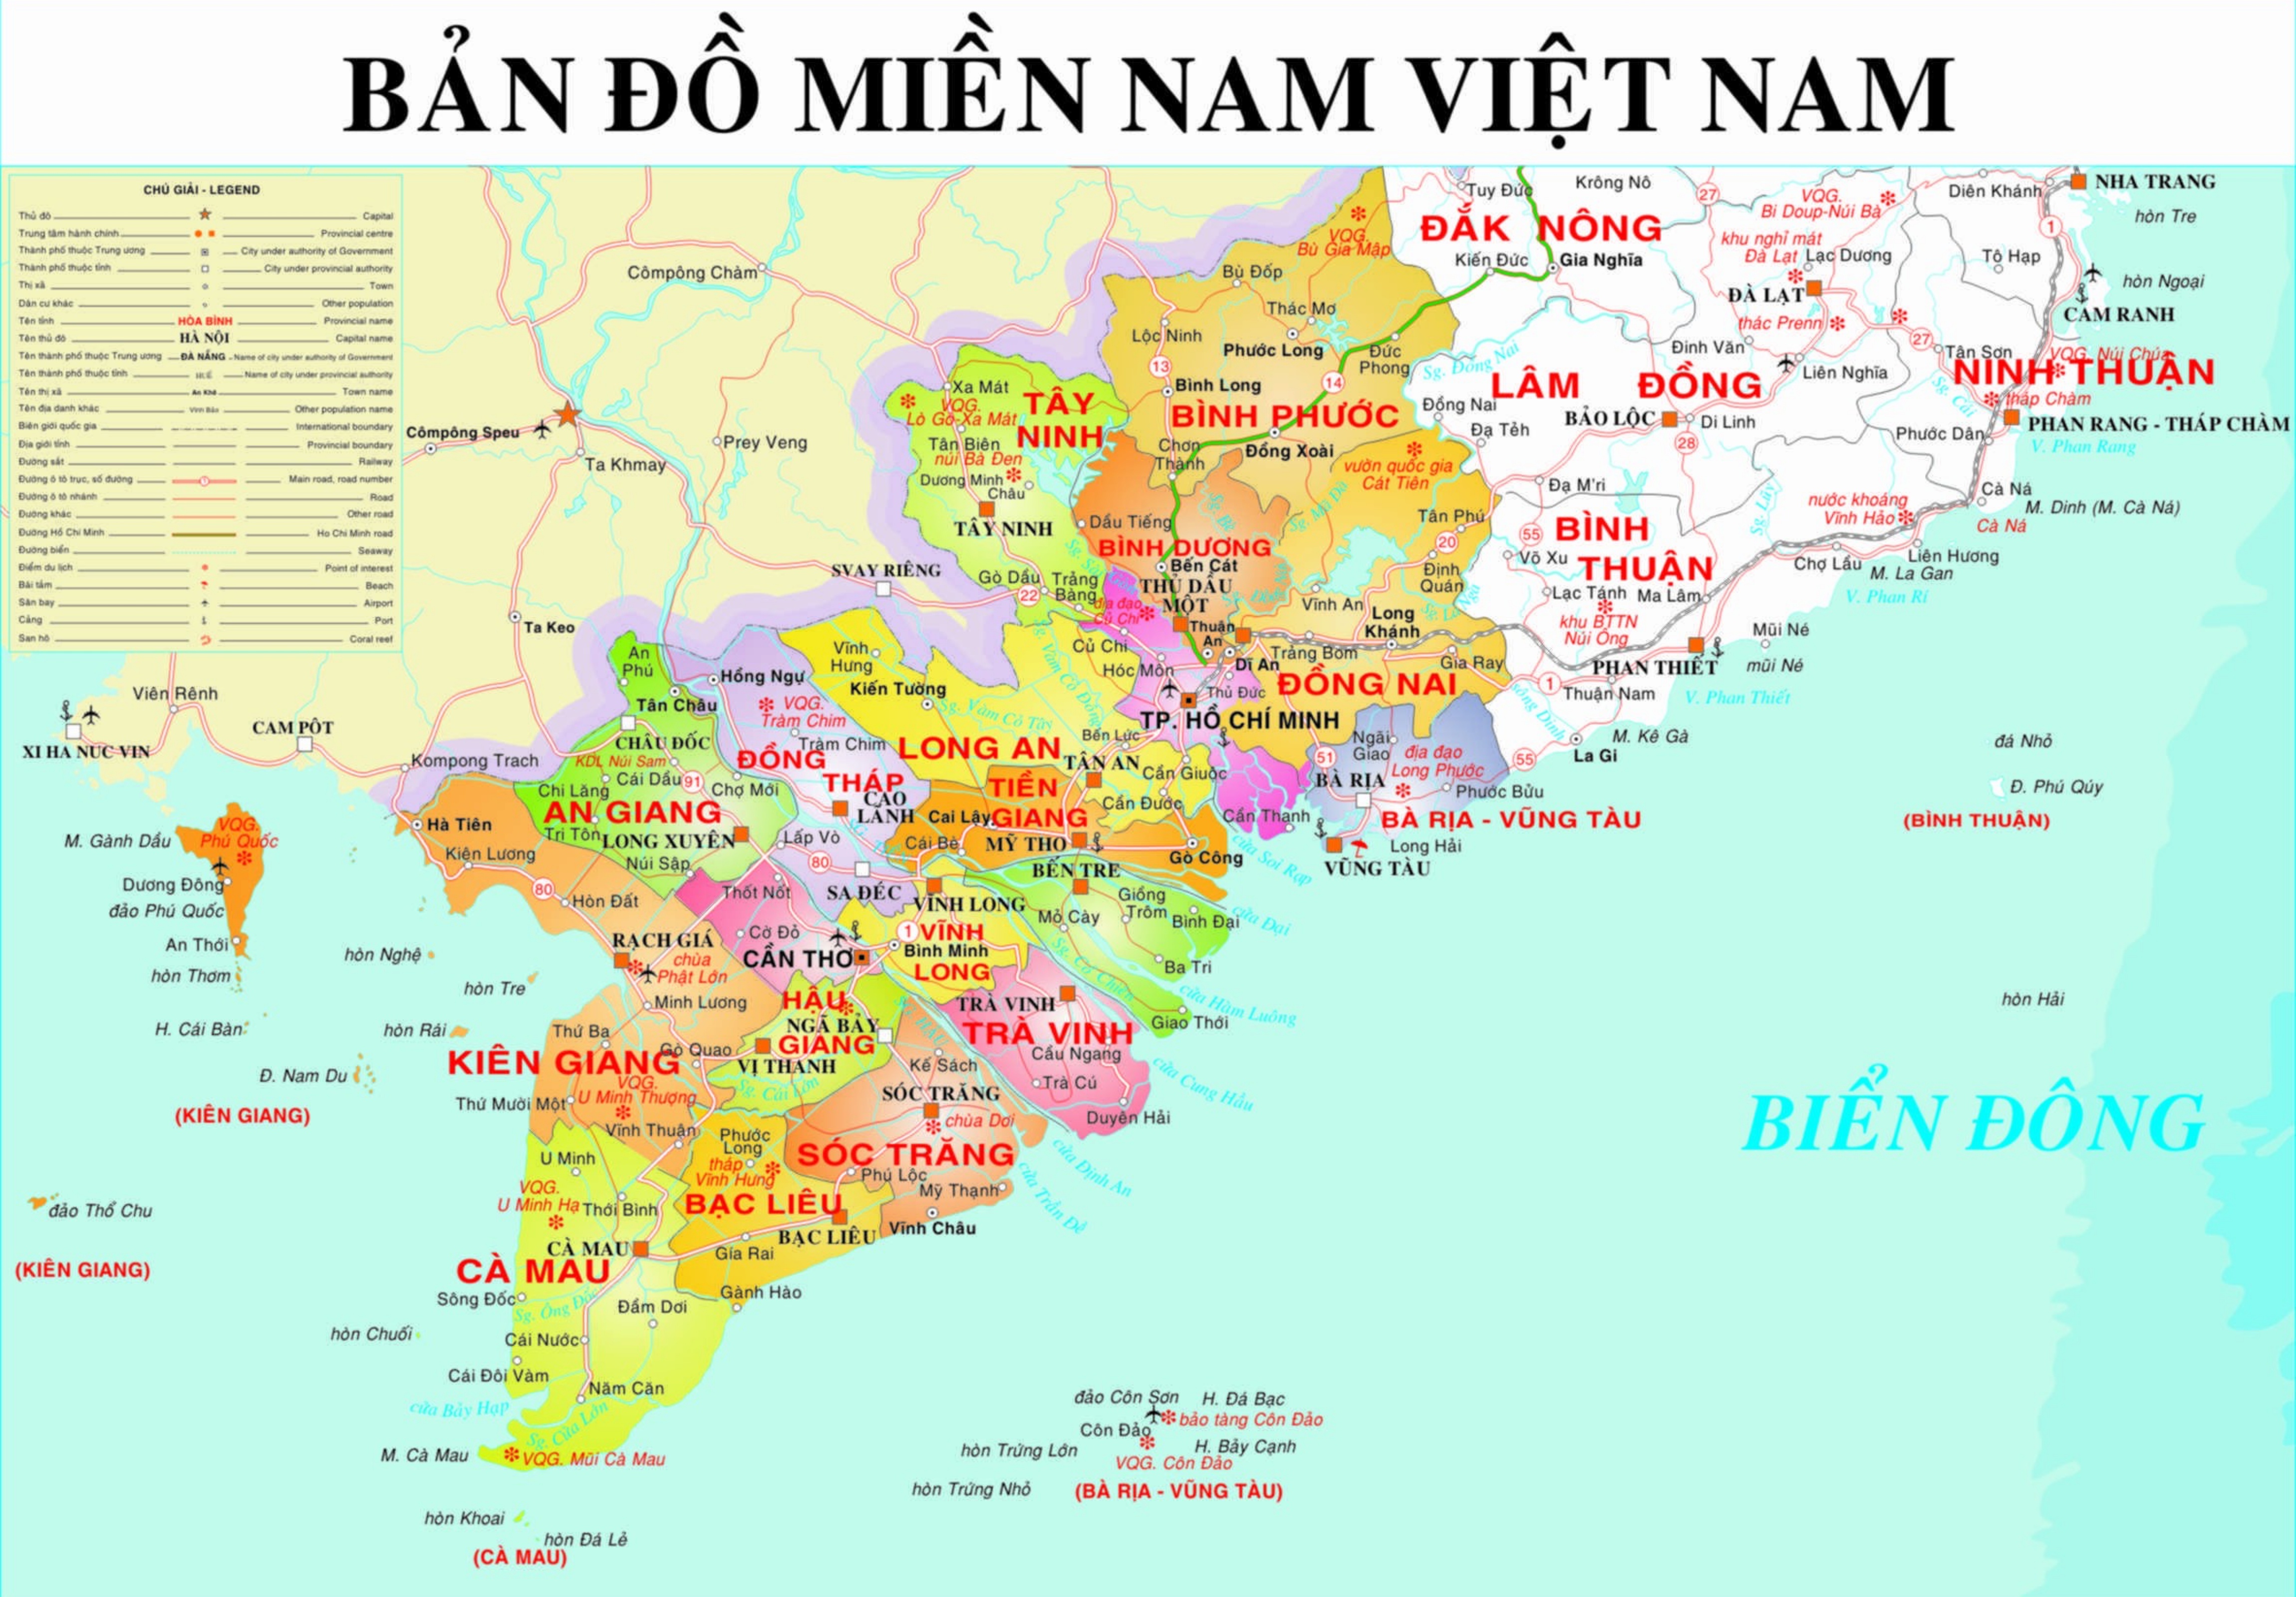 Ứng dụng Biên tập bản đồ miền Nam Việt Nam sẽ giúp cho bạn có thể tạo ra bản đồ chính xác và đầy đủ nhất. Với những bản đồ được cập nhật liên tục, bạn sẽ không bao giờ thấy bị lỗi nhằm đảm bảo an toàn và chính xác cho mọi người.